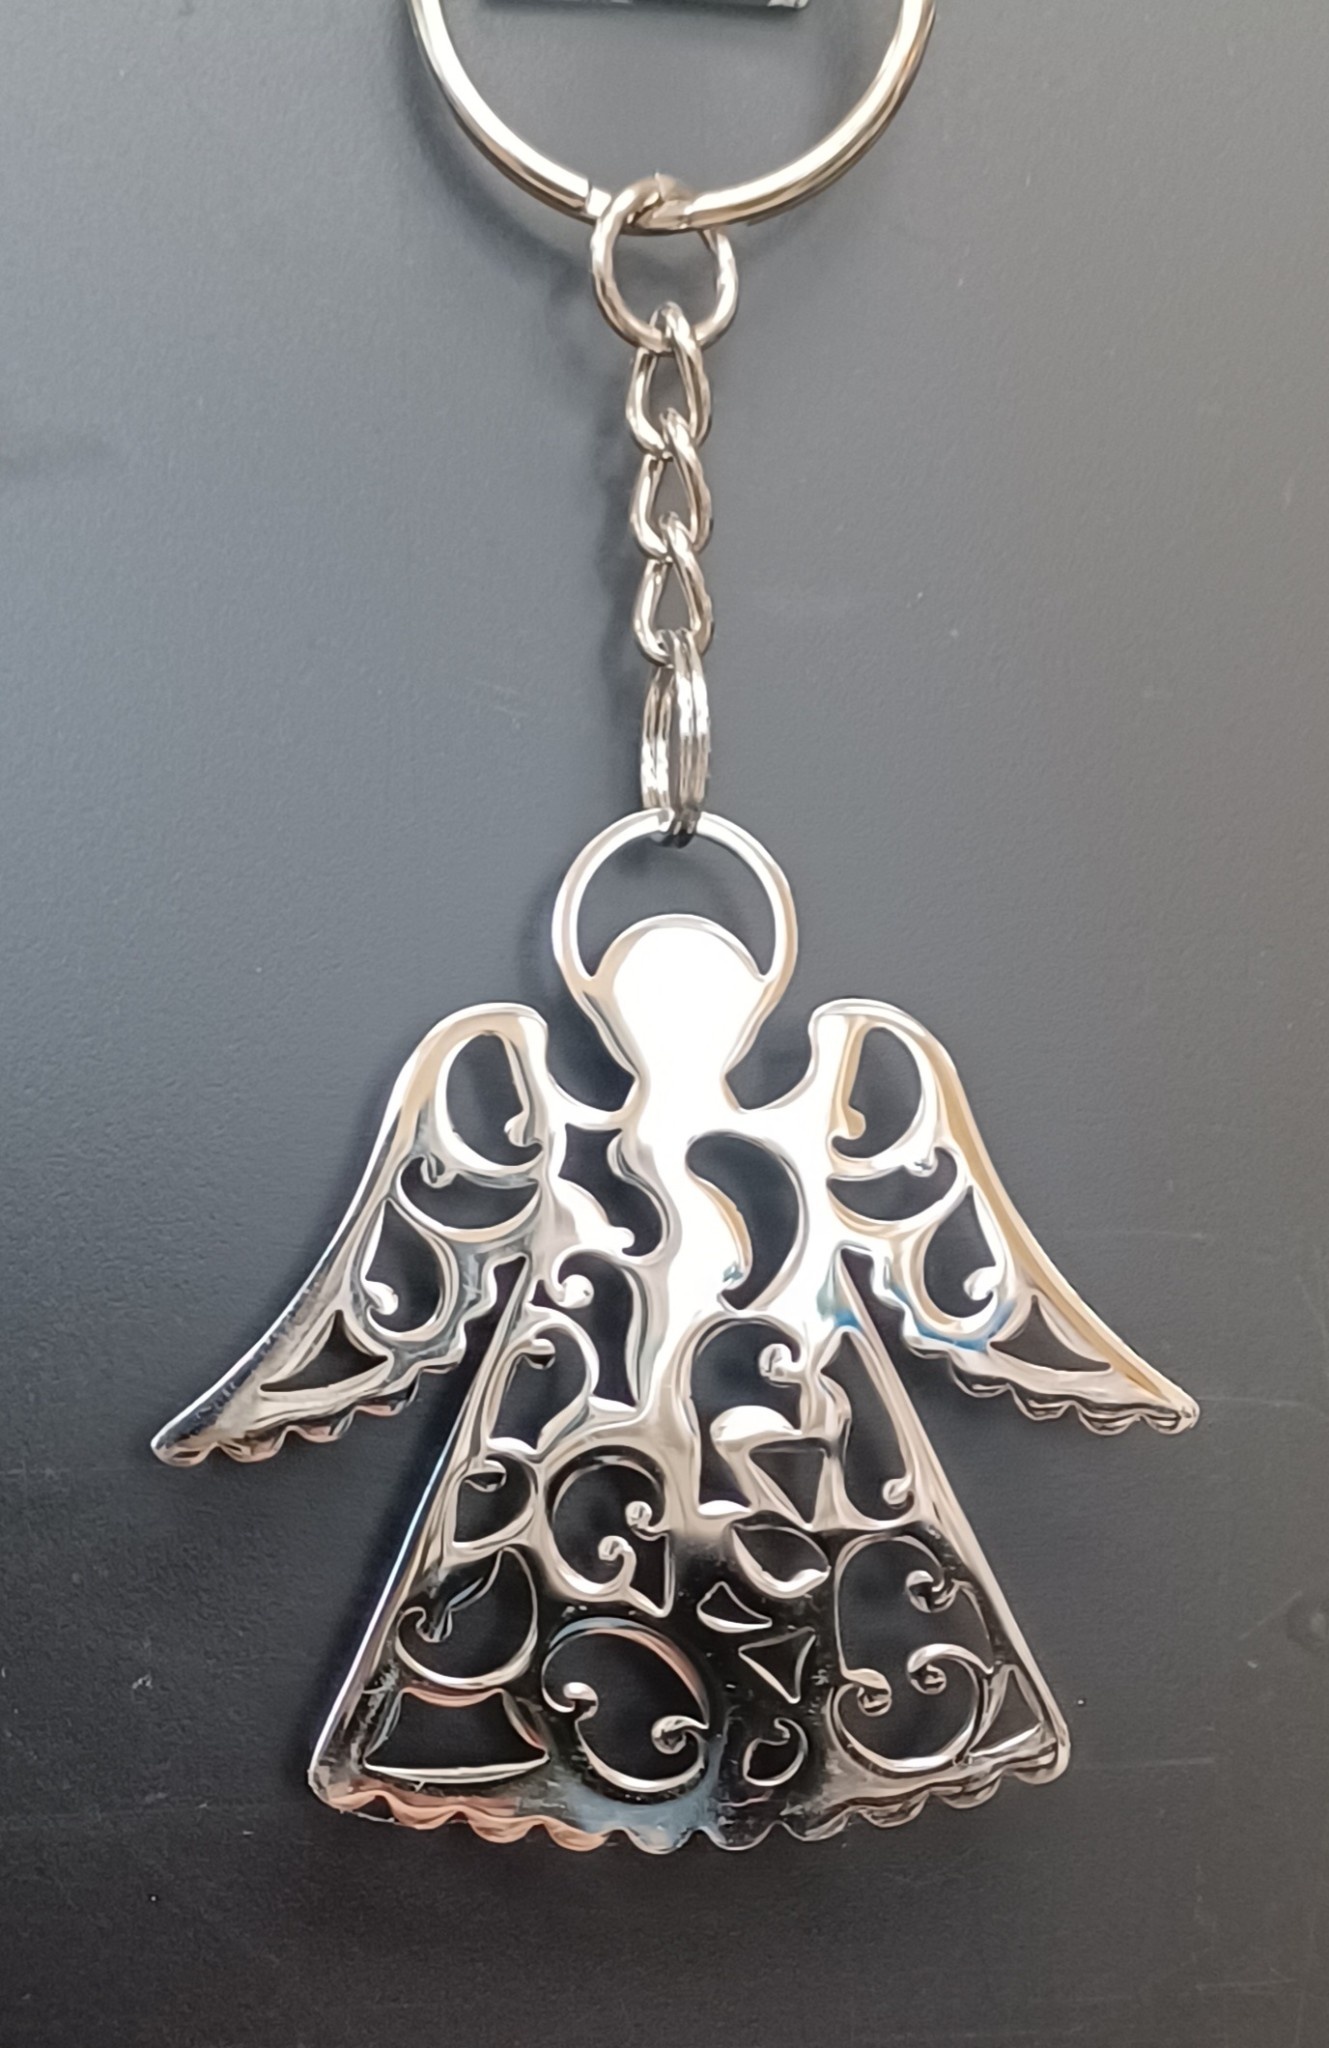 2" Angel Keychain